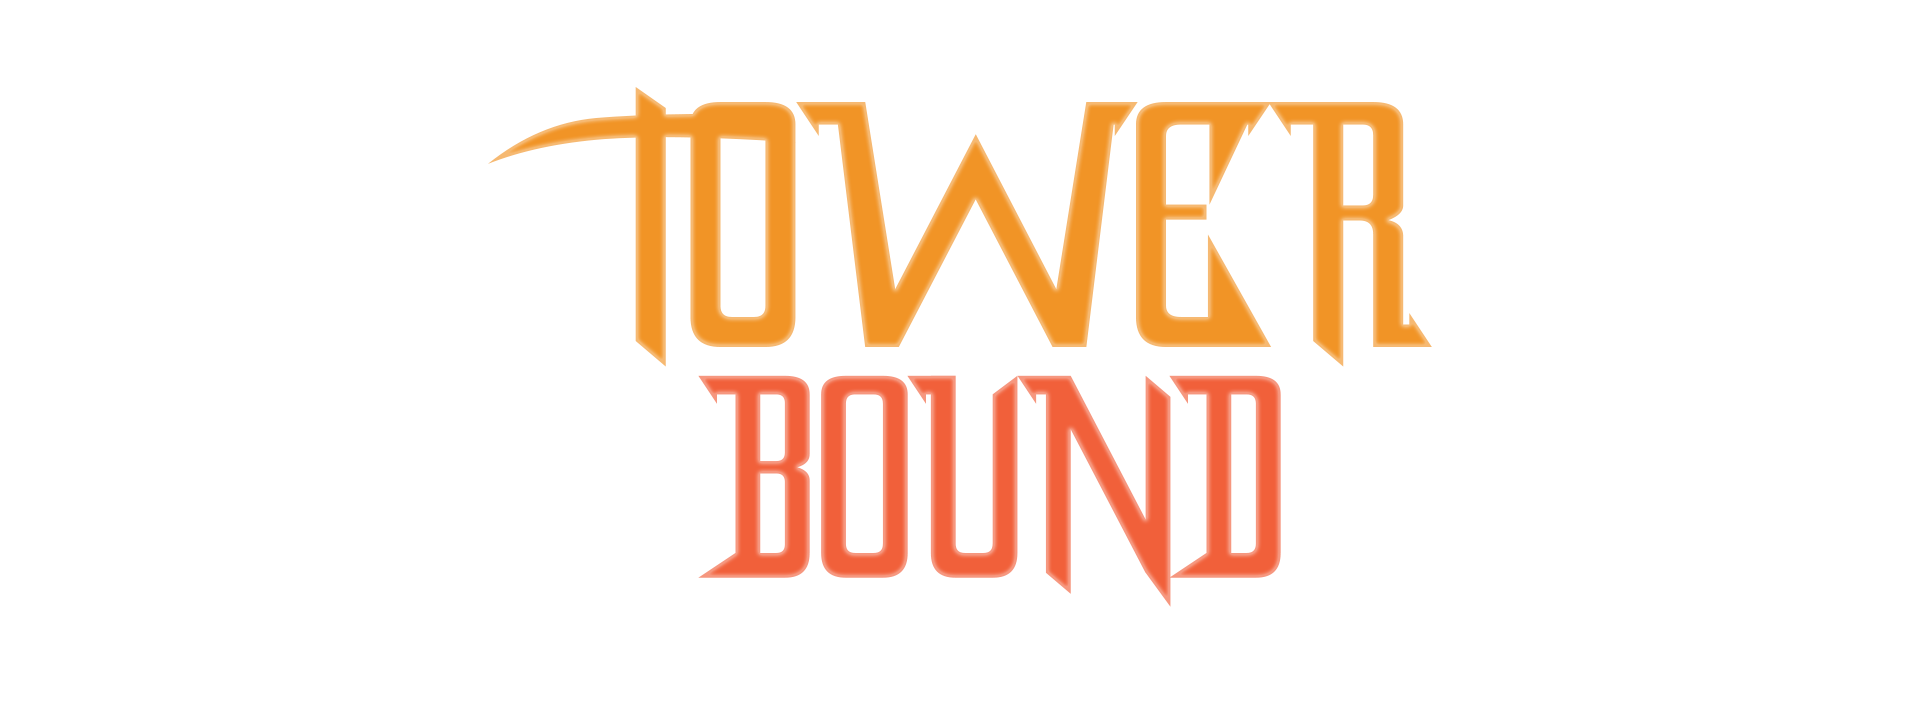 Tower Bound